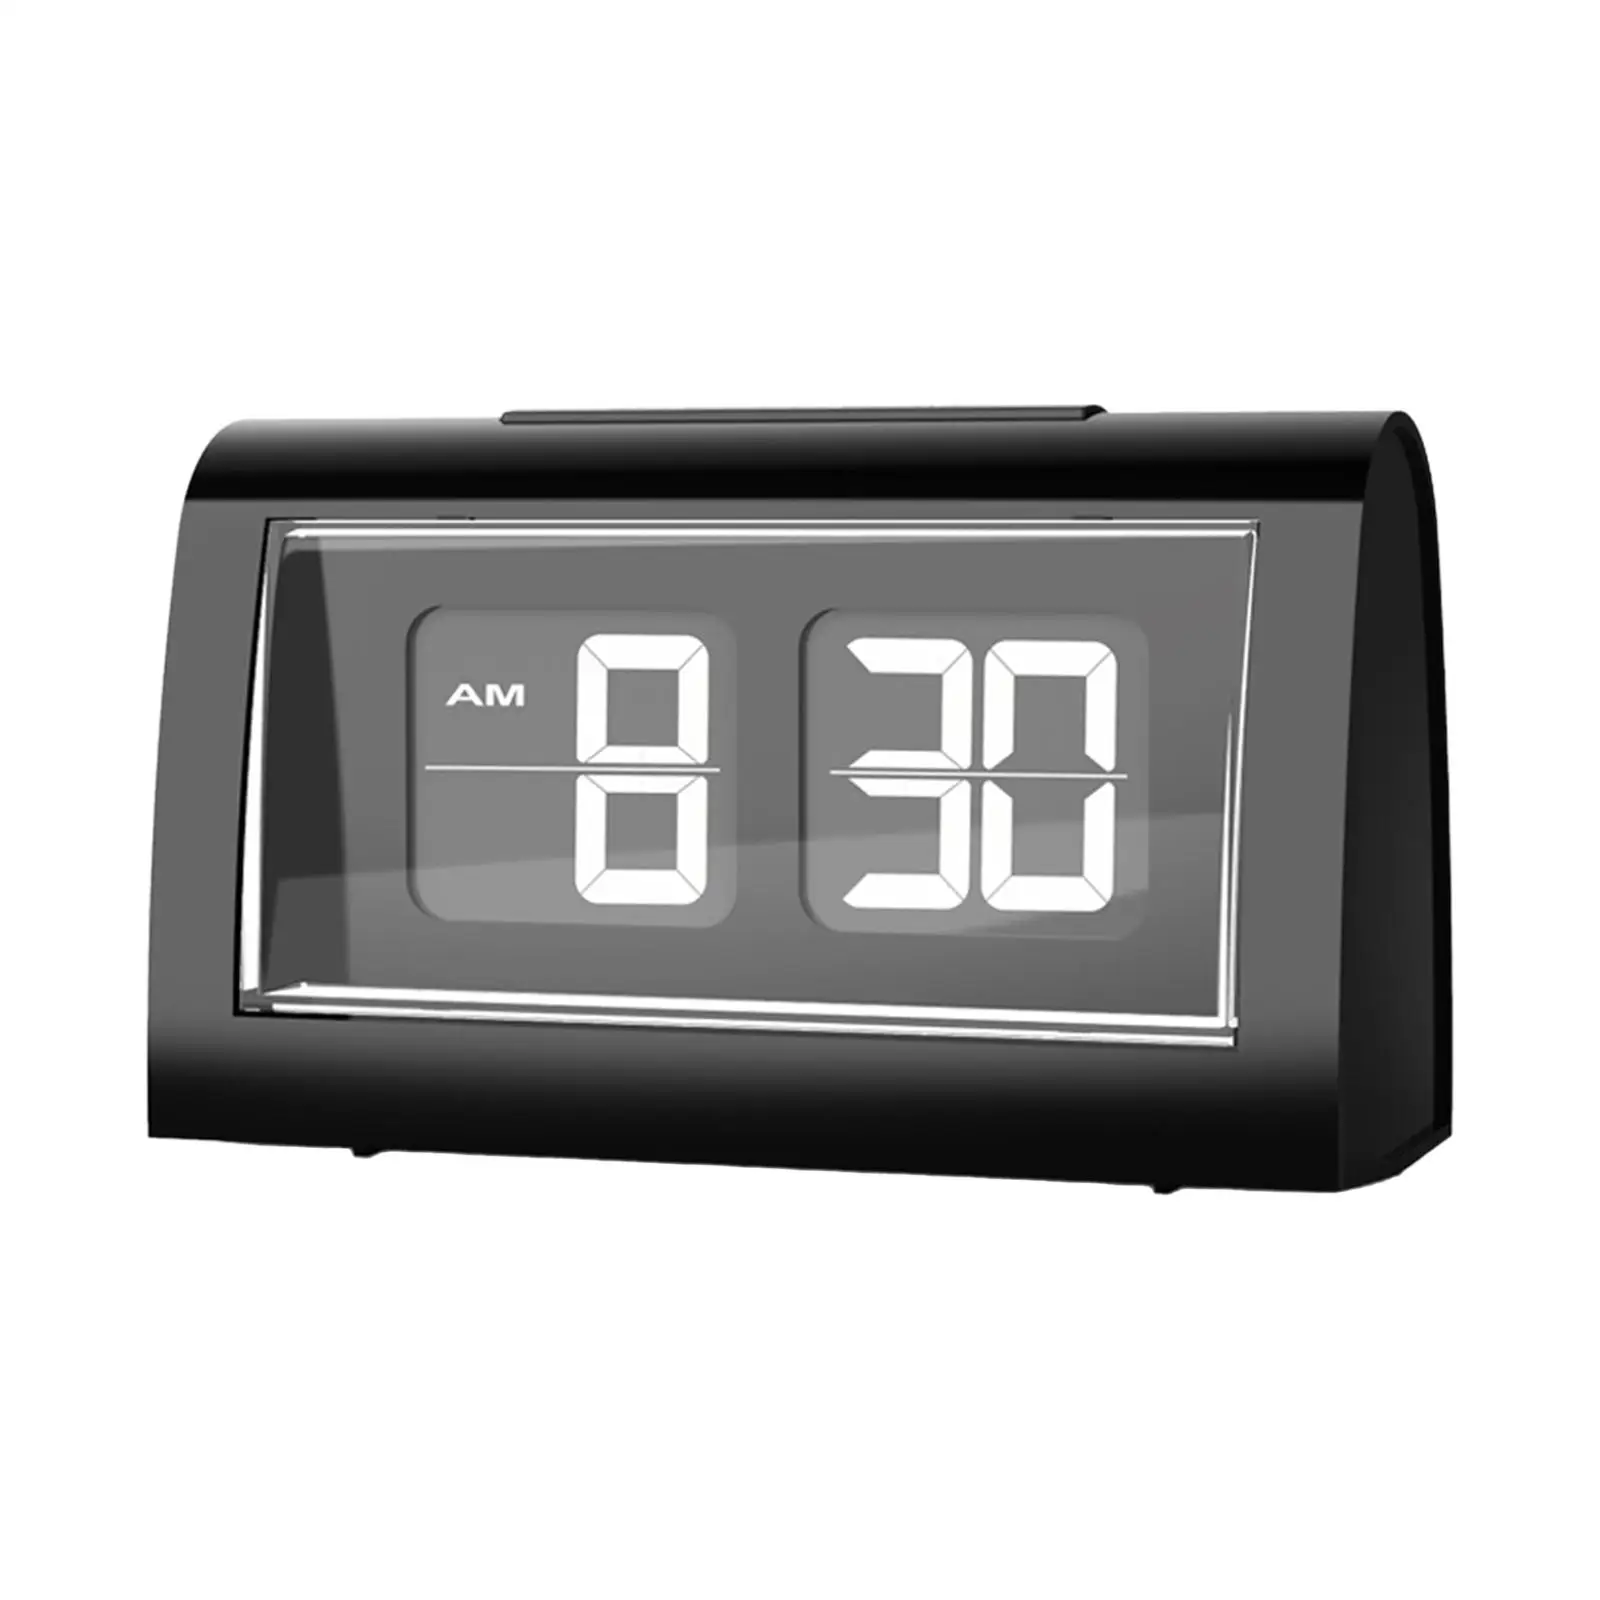 Auto Flip Desk Alarm Clock LCD Display calender Bedroom Home backlight Digital